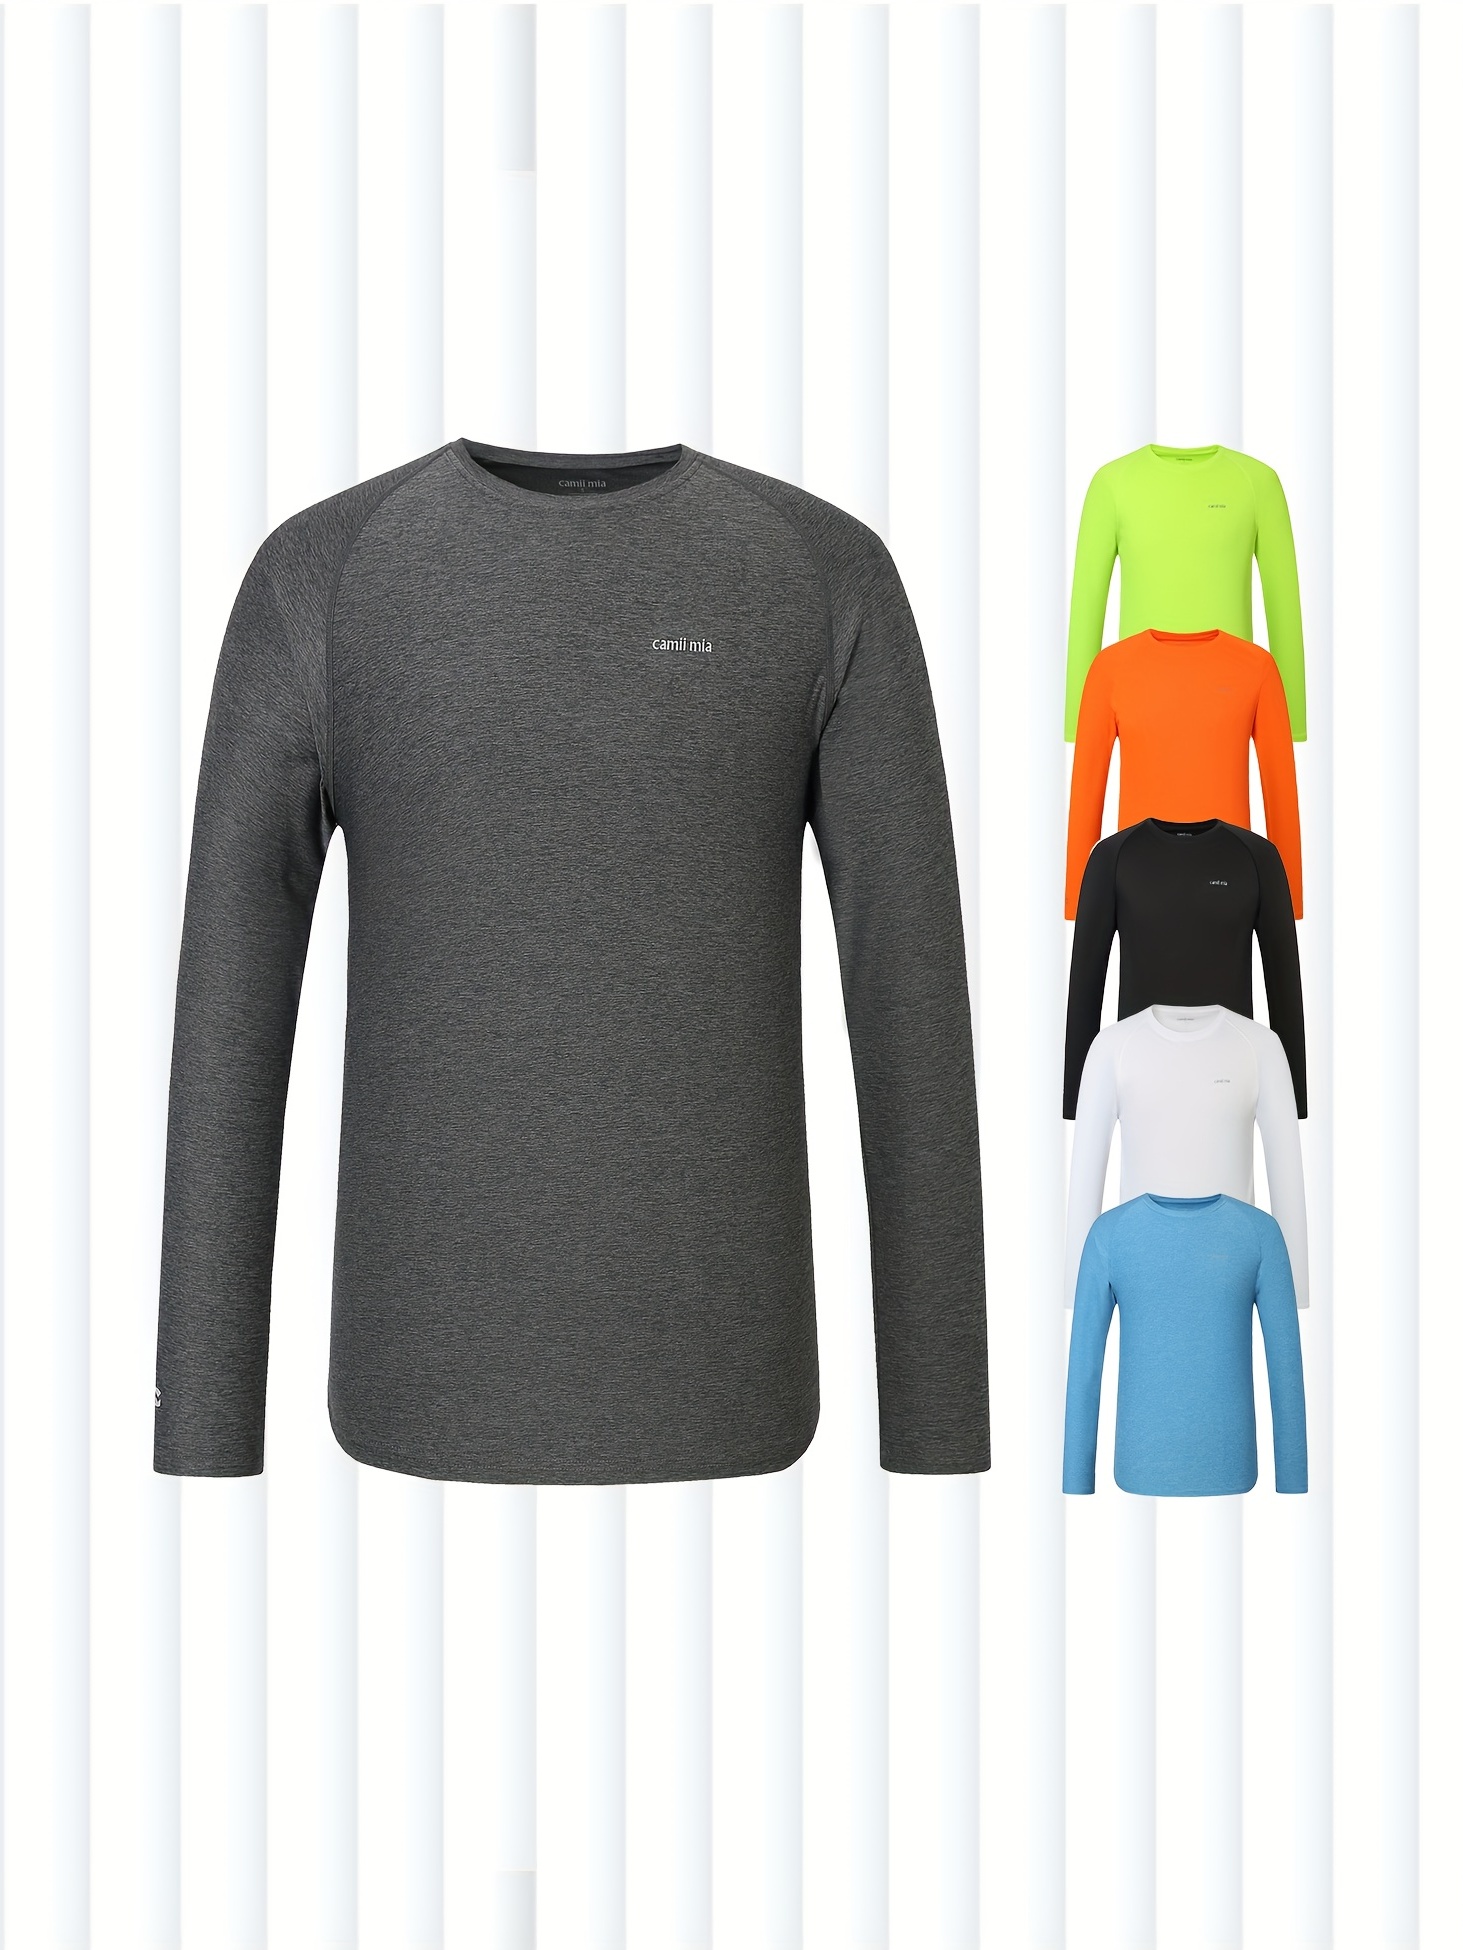 Buy Mens UV Protection Shirts Long Sleeve Running Shirt Online at